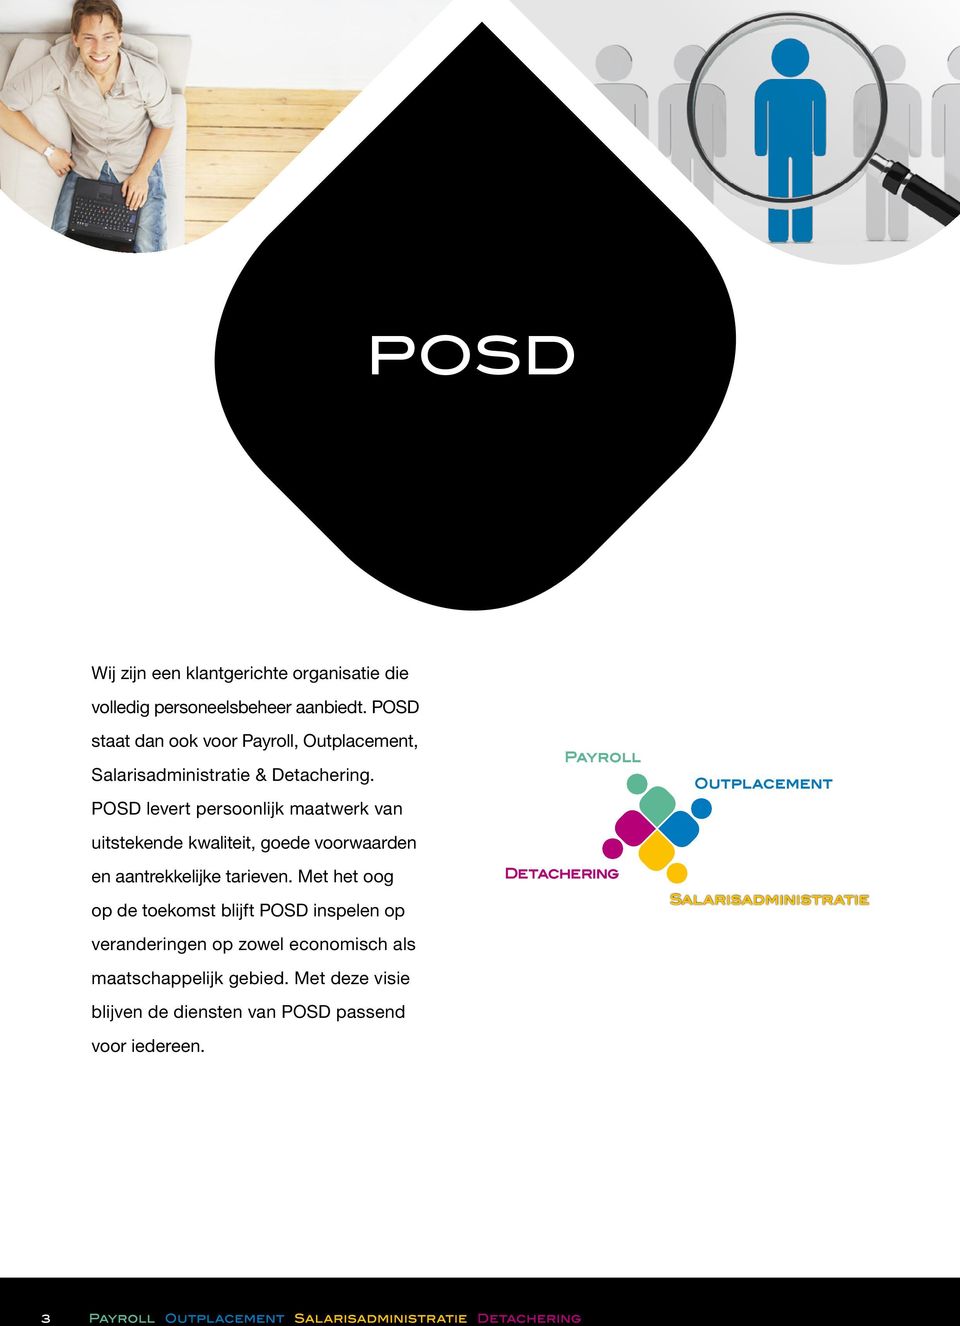 POSD levert persoonlijk maatwerk van uitstekende kwaliteit, goede voorwaarden en aantrekkelijke tarieven.